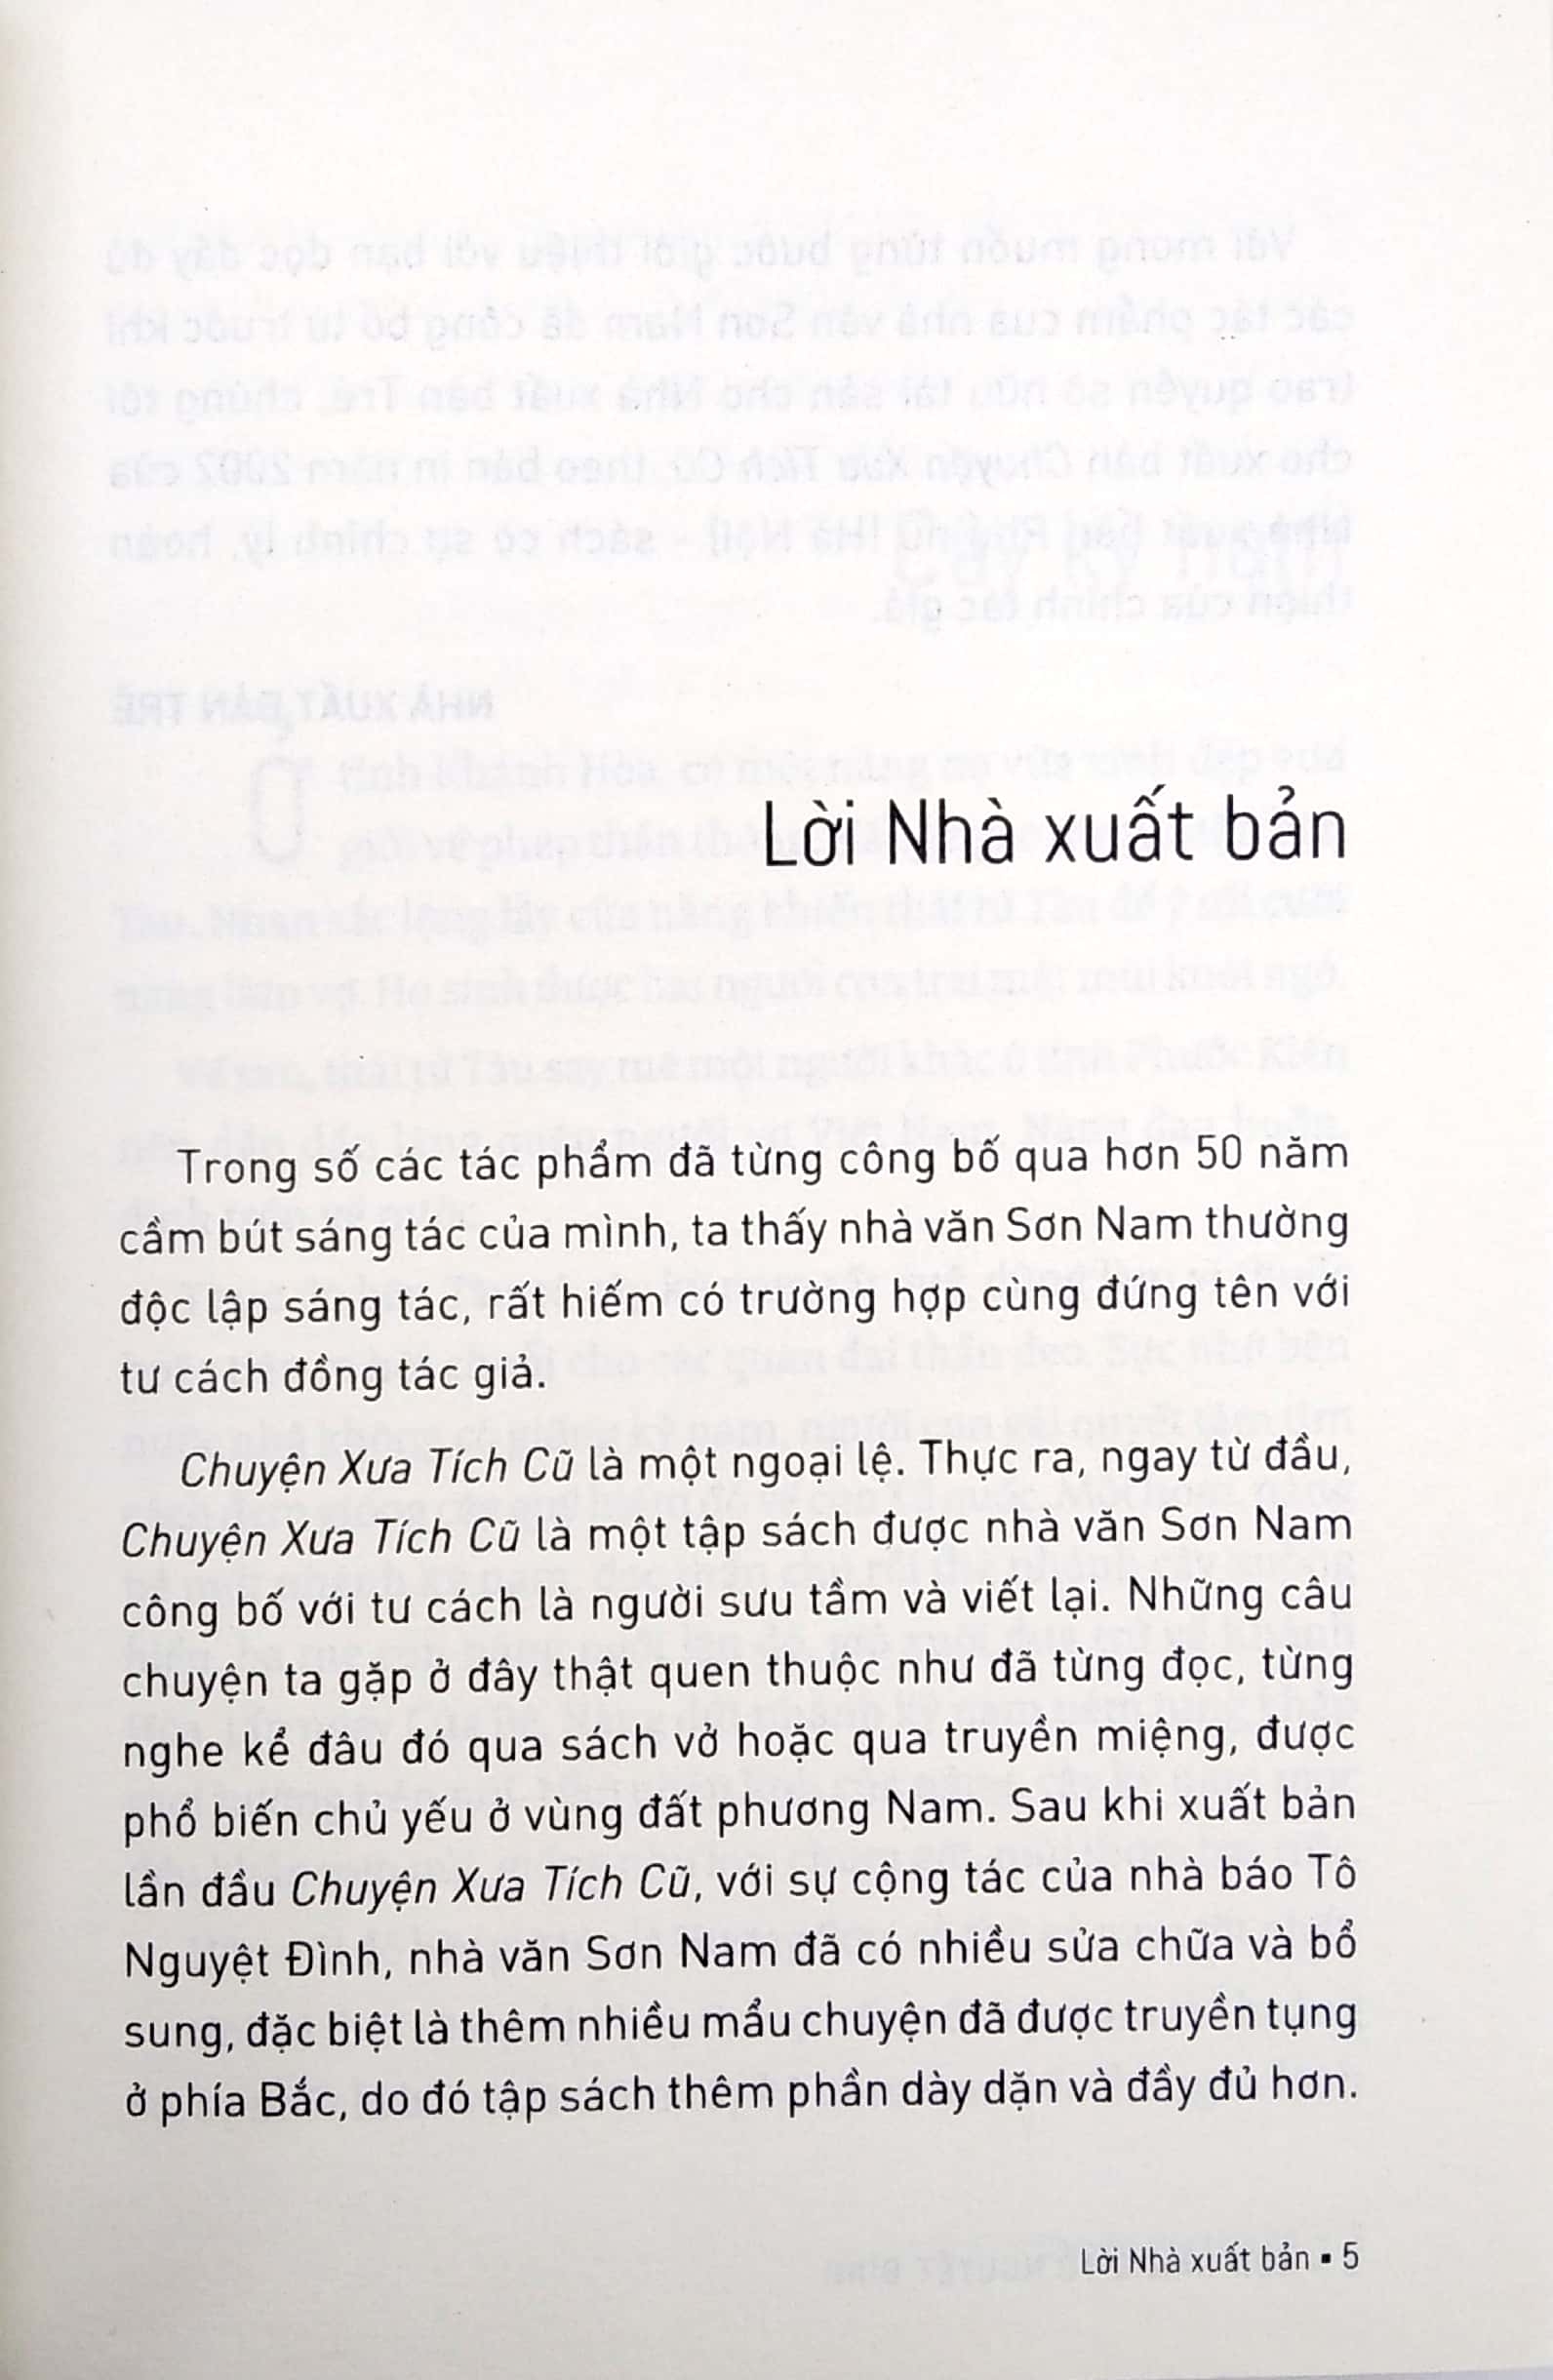 Sơn Nam Và Tô Nguyệt Đình - Chuyện Xưa Tích Cũ 2018 PDF